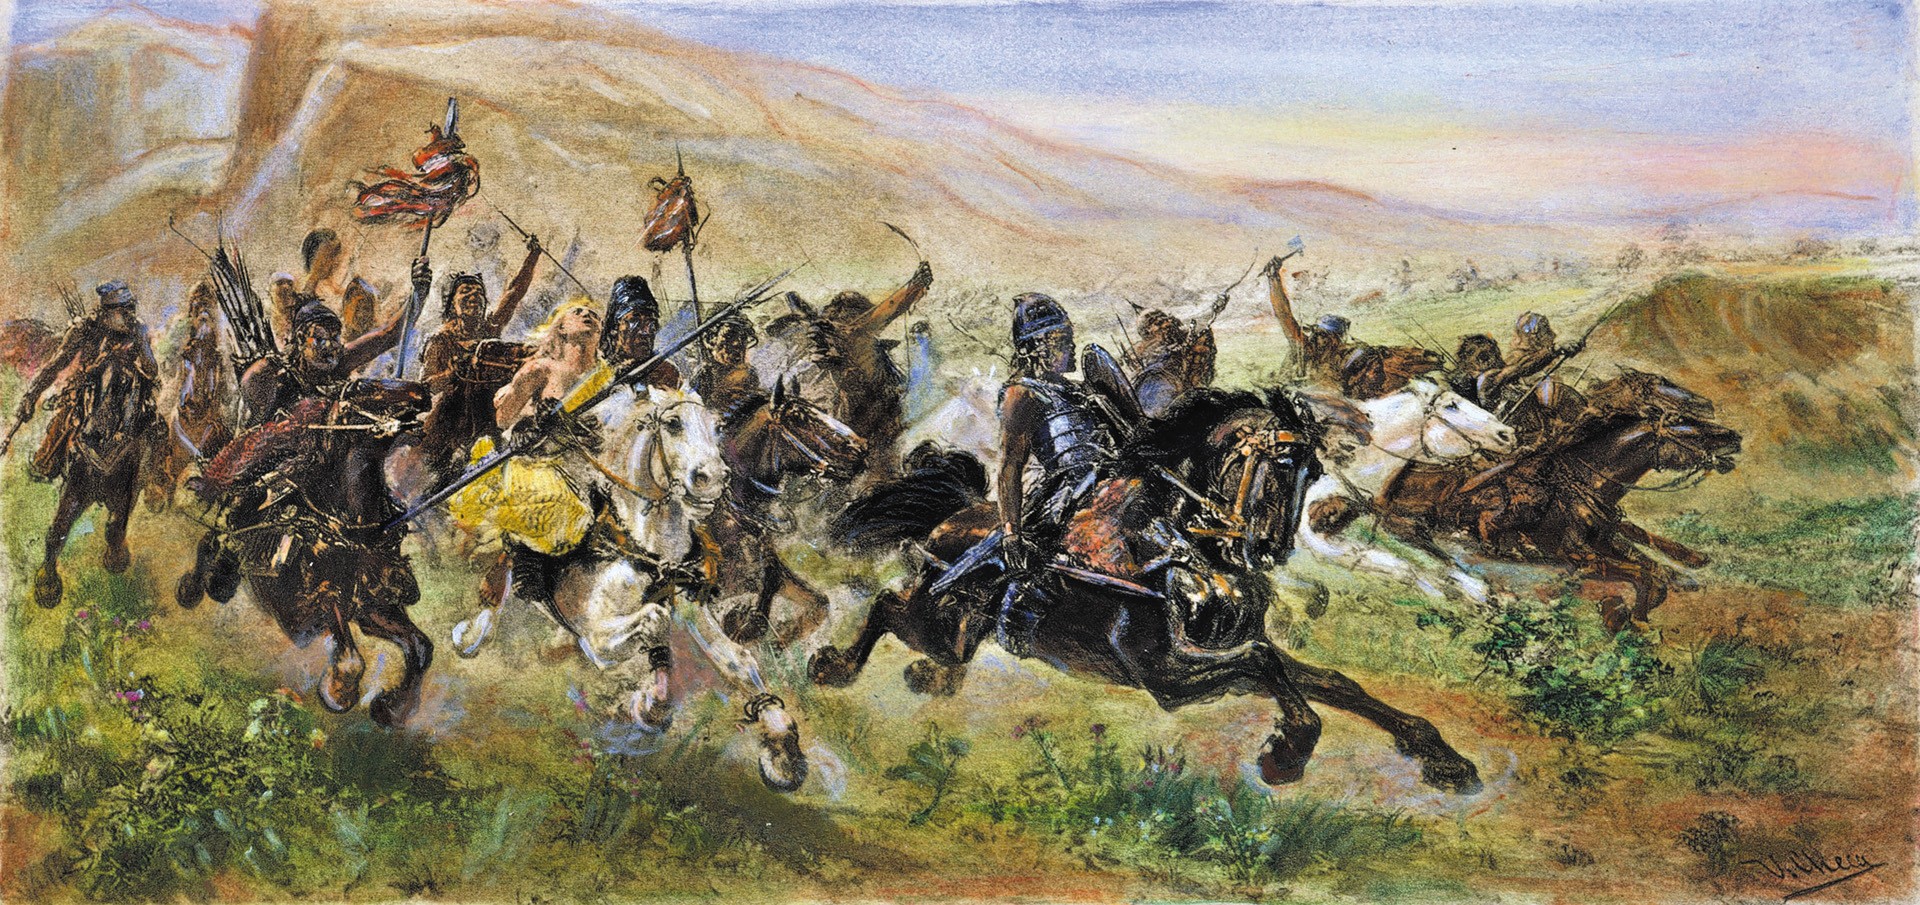 Quân Hung Nô thời vua Atillia được coi là một thế lực đe dọa Tây Âu.